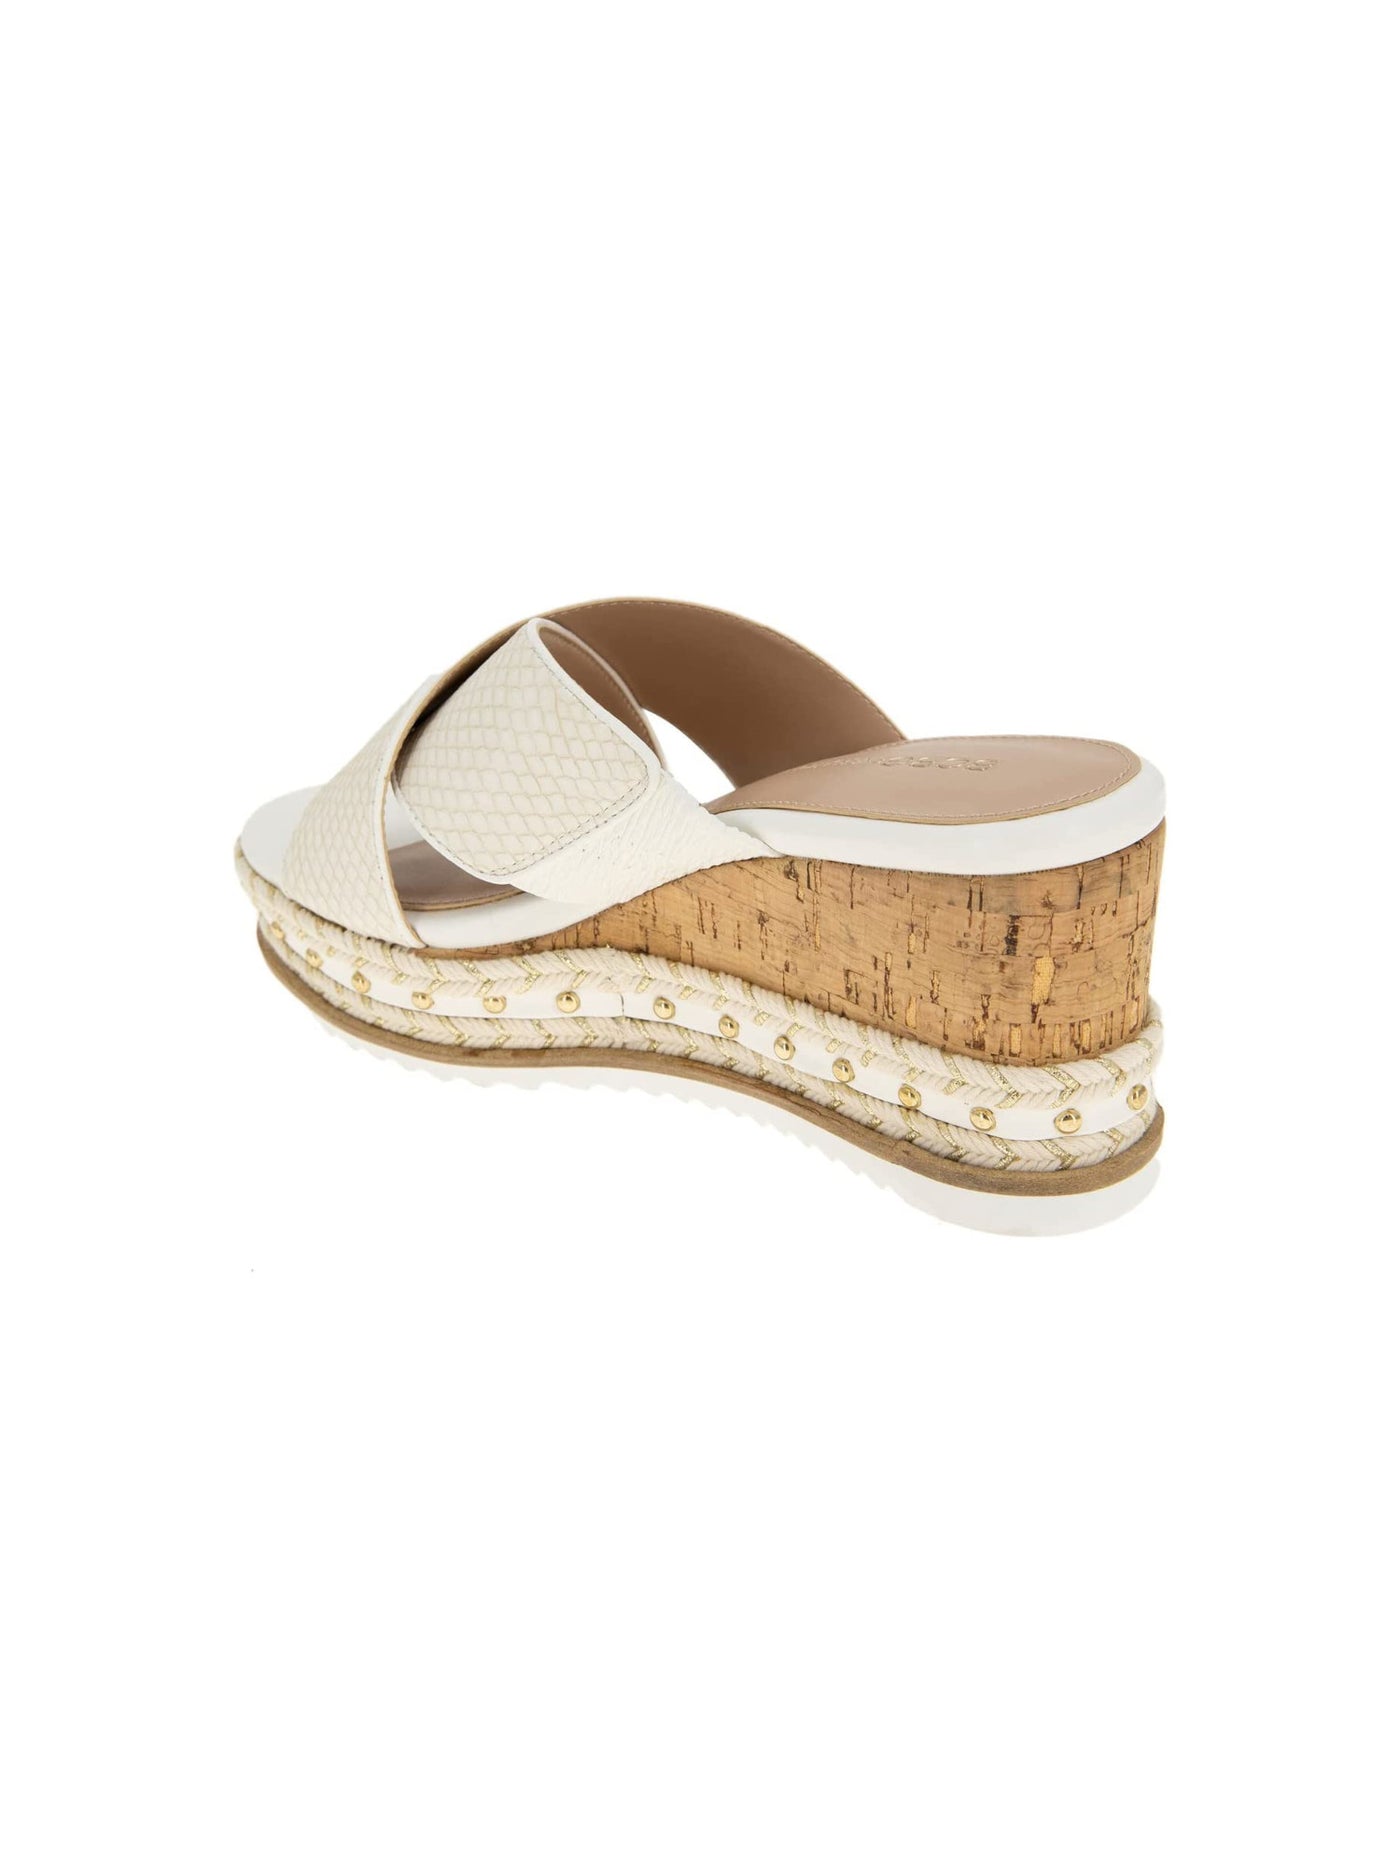 BCBGENERATION Womens White Studded Comfort Embellished Habiana Round Toe Wedge Slip On Sandals Shoes M